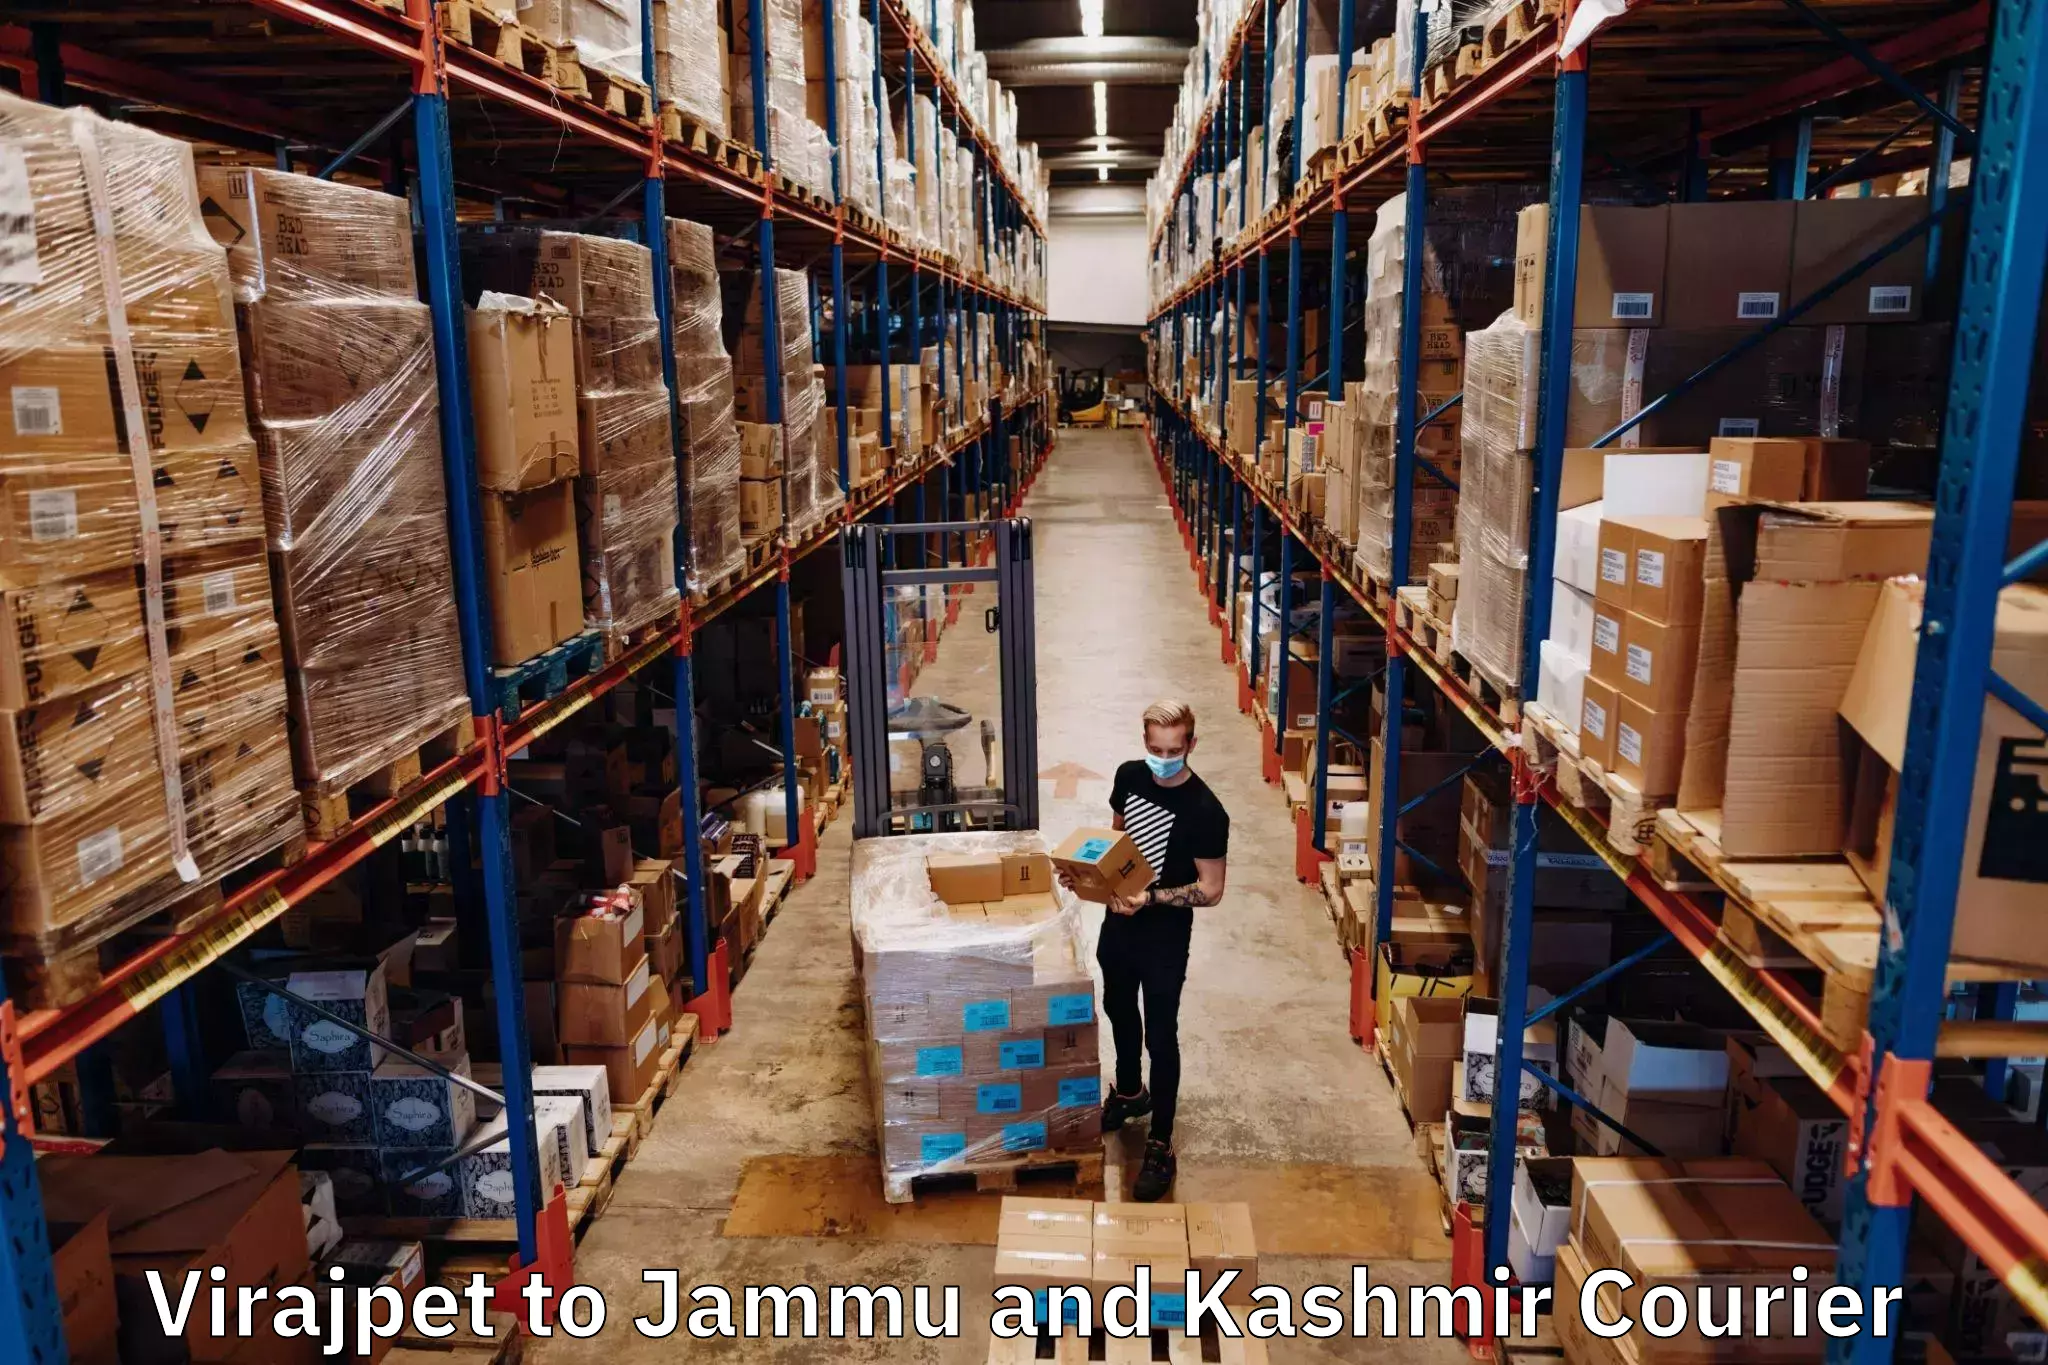 Express logistics providers Virajpet to Jammu and Kashmir